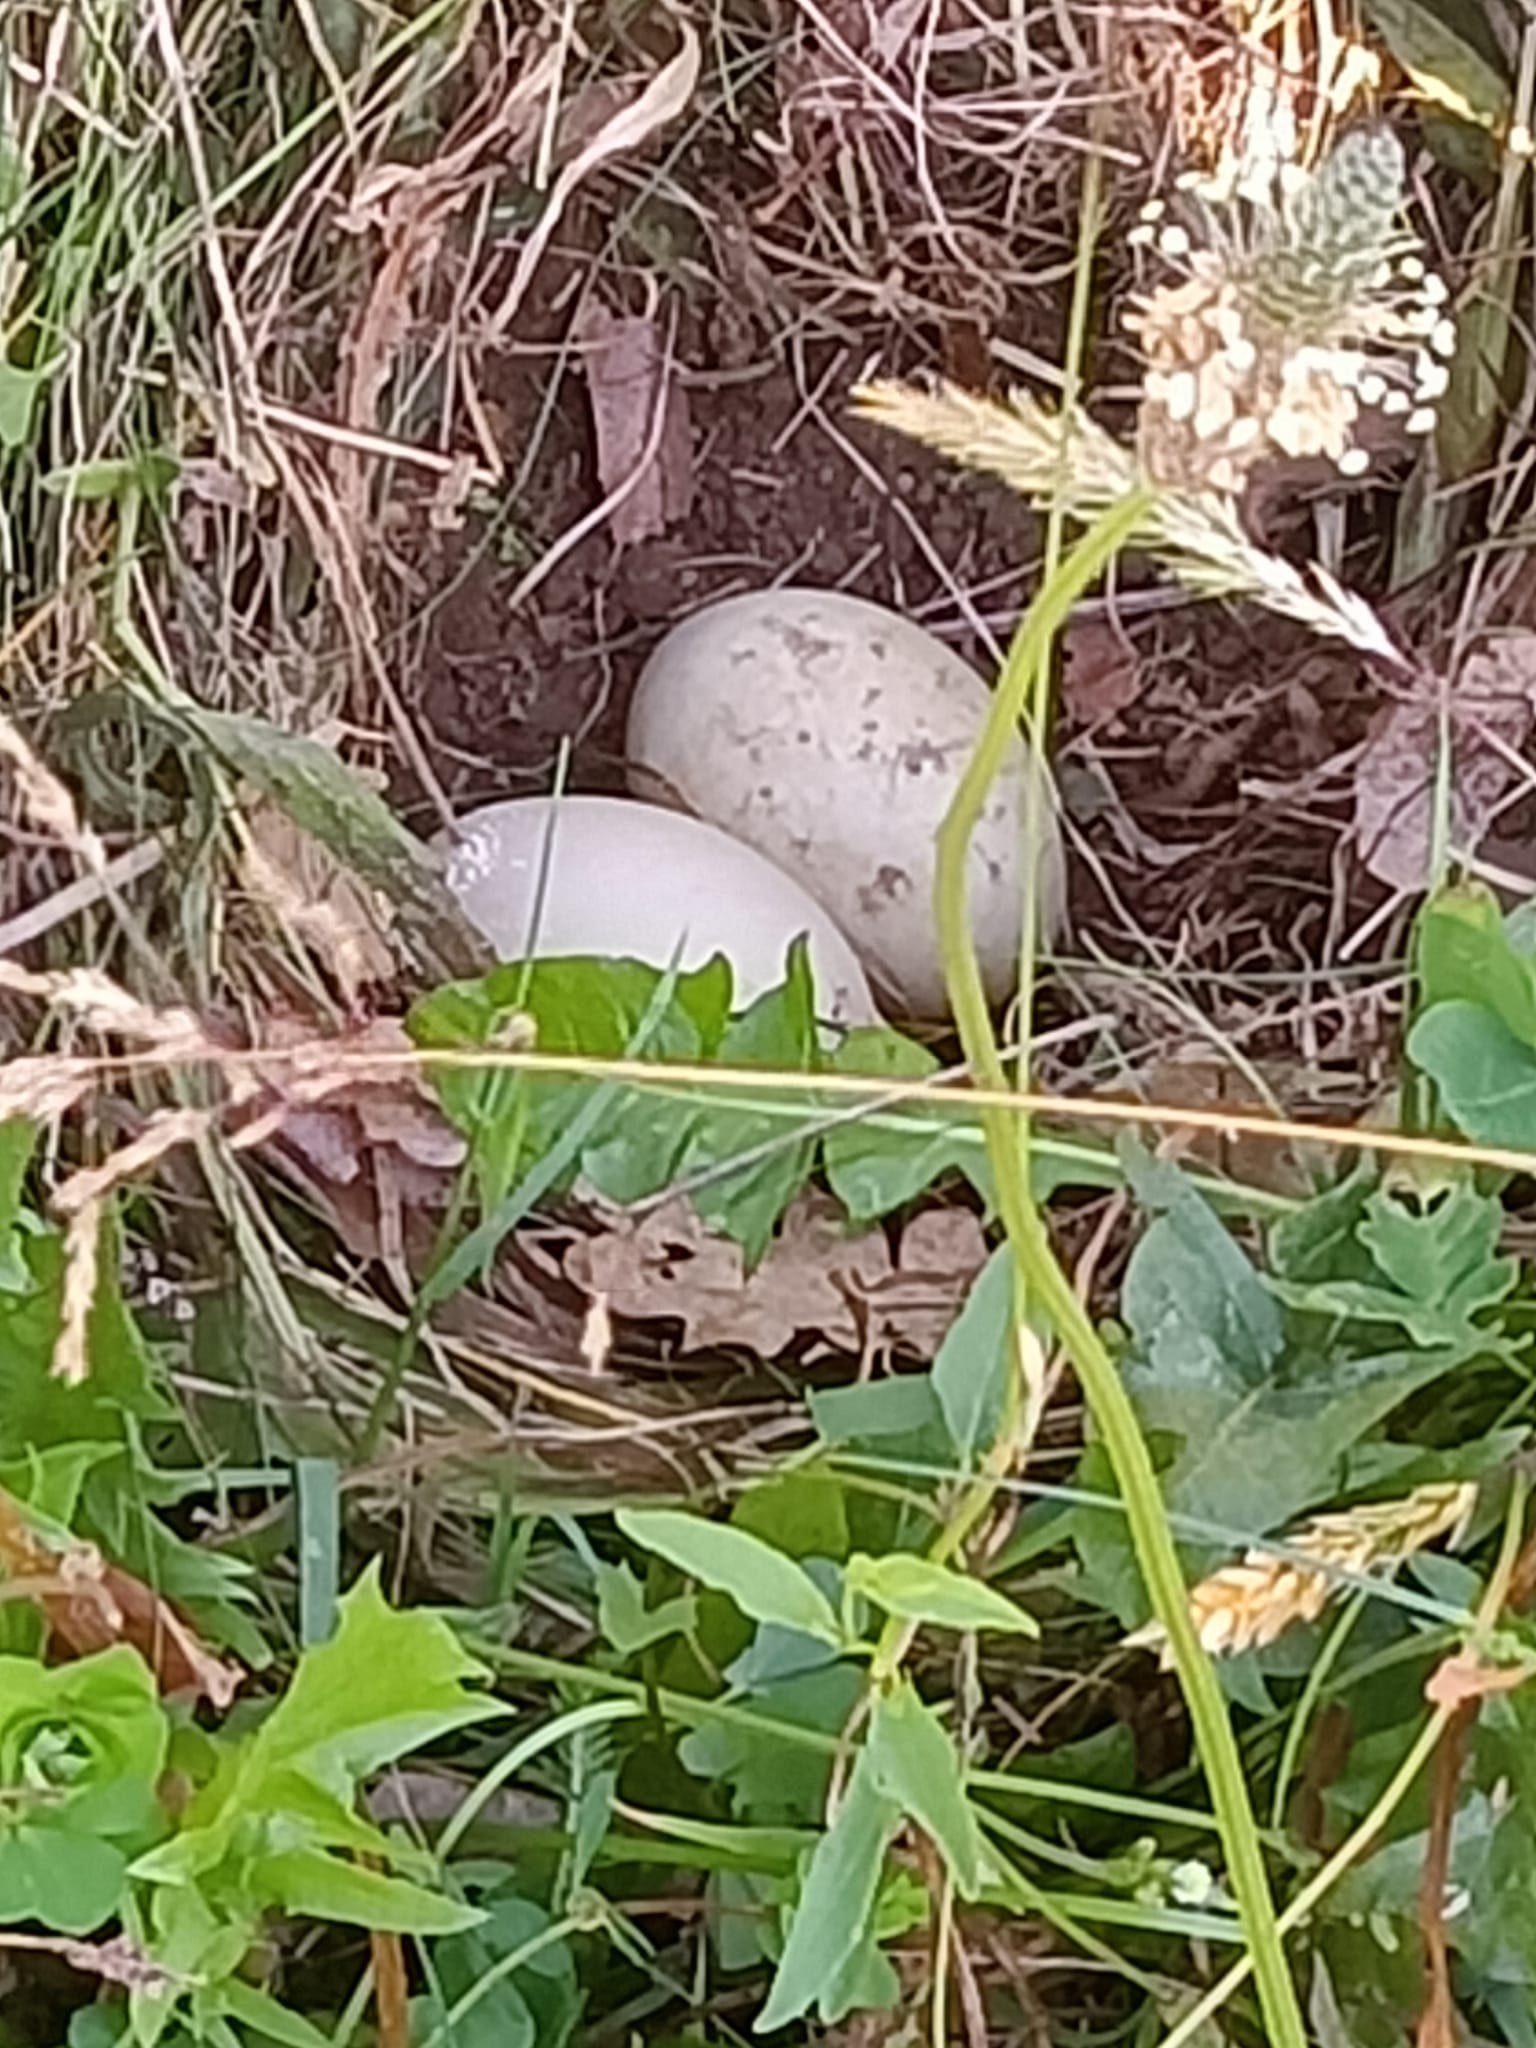 Solaro, mamma anatra sceglie il giardino dell’asilo nido per covare